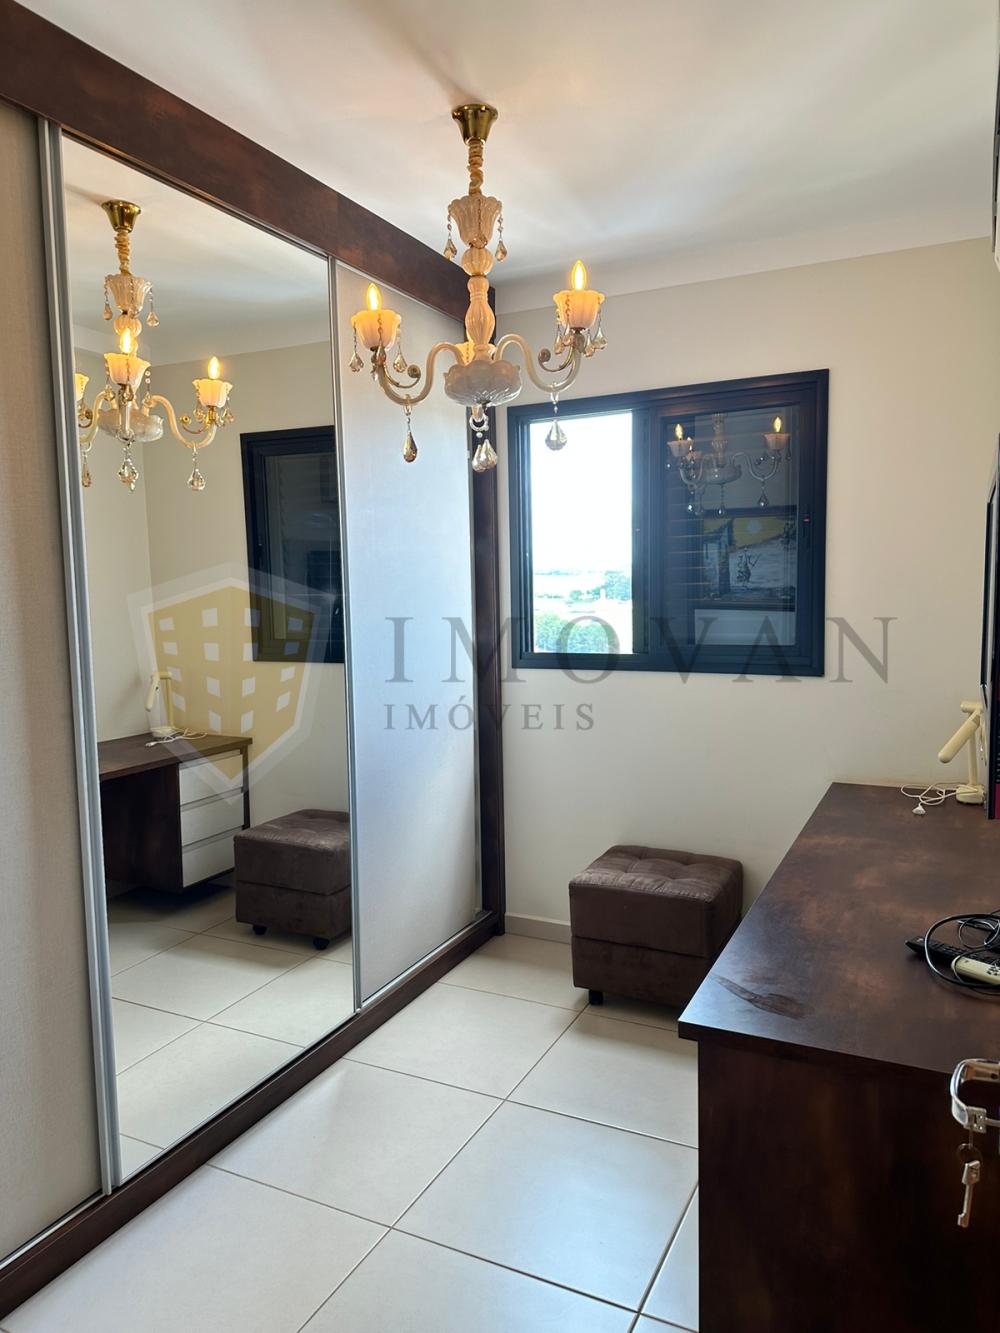 Alugar Apartamento / Padrão em Ribeirão Preto R$ 4.000,00 - Foto 9